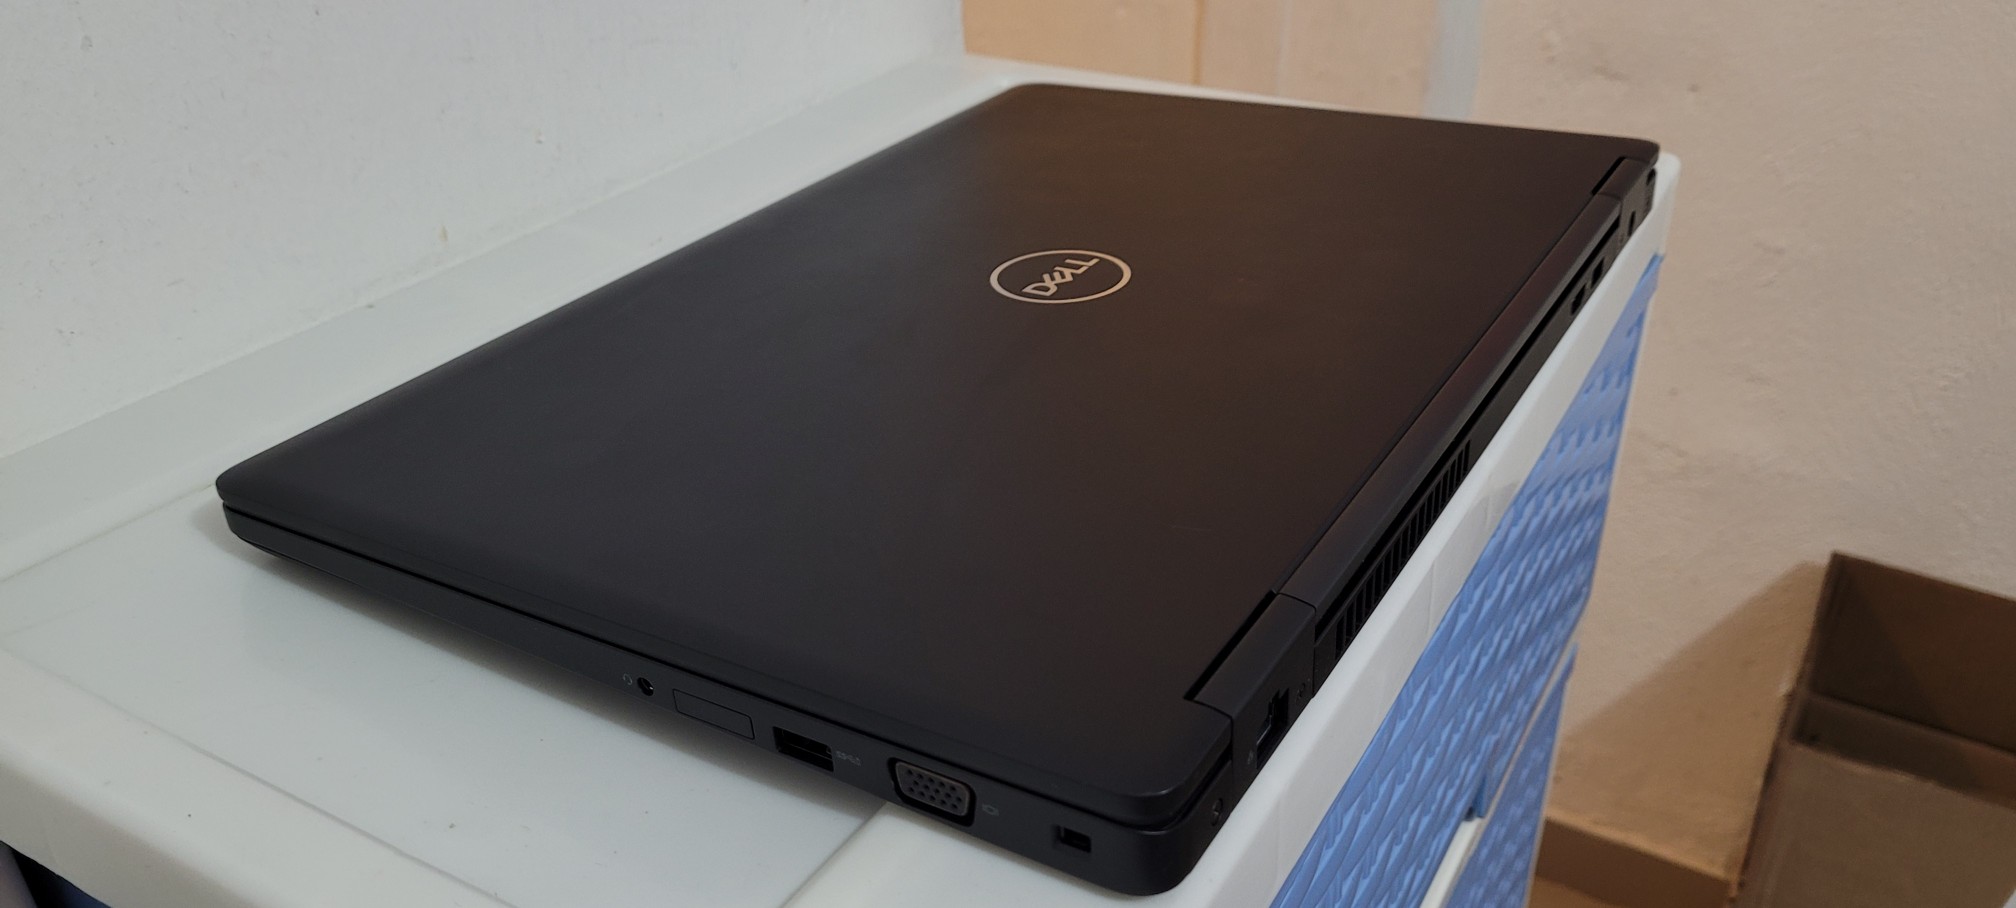 computadoras y laptops - laptop Dell 17 Pulg Core i7 Ram 12gb Disco 256gb SSD Solido  2